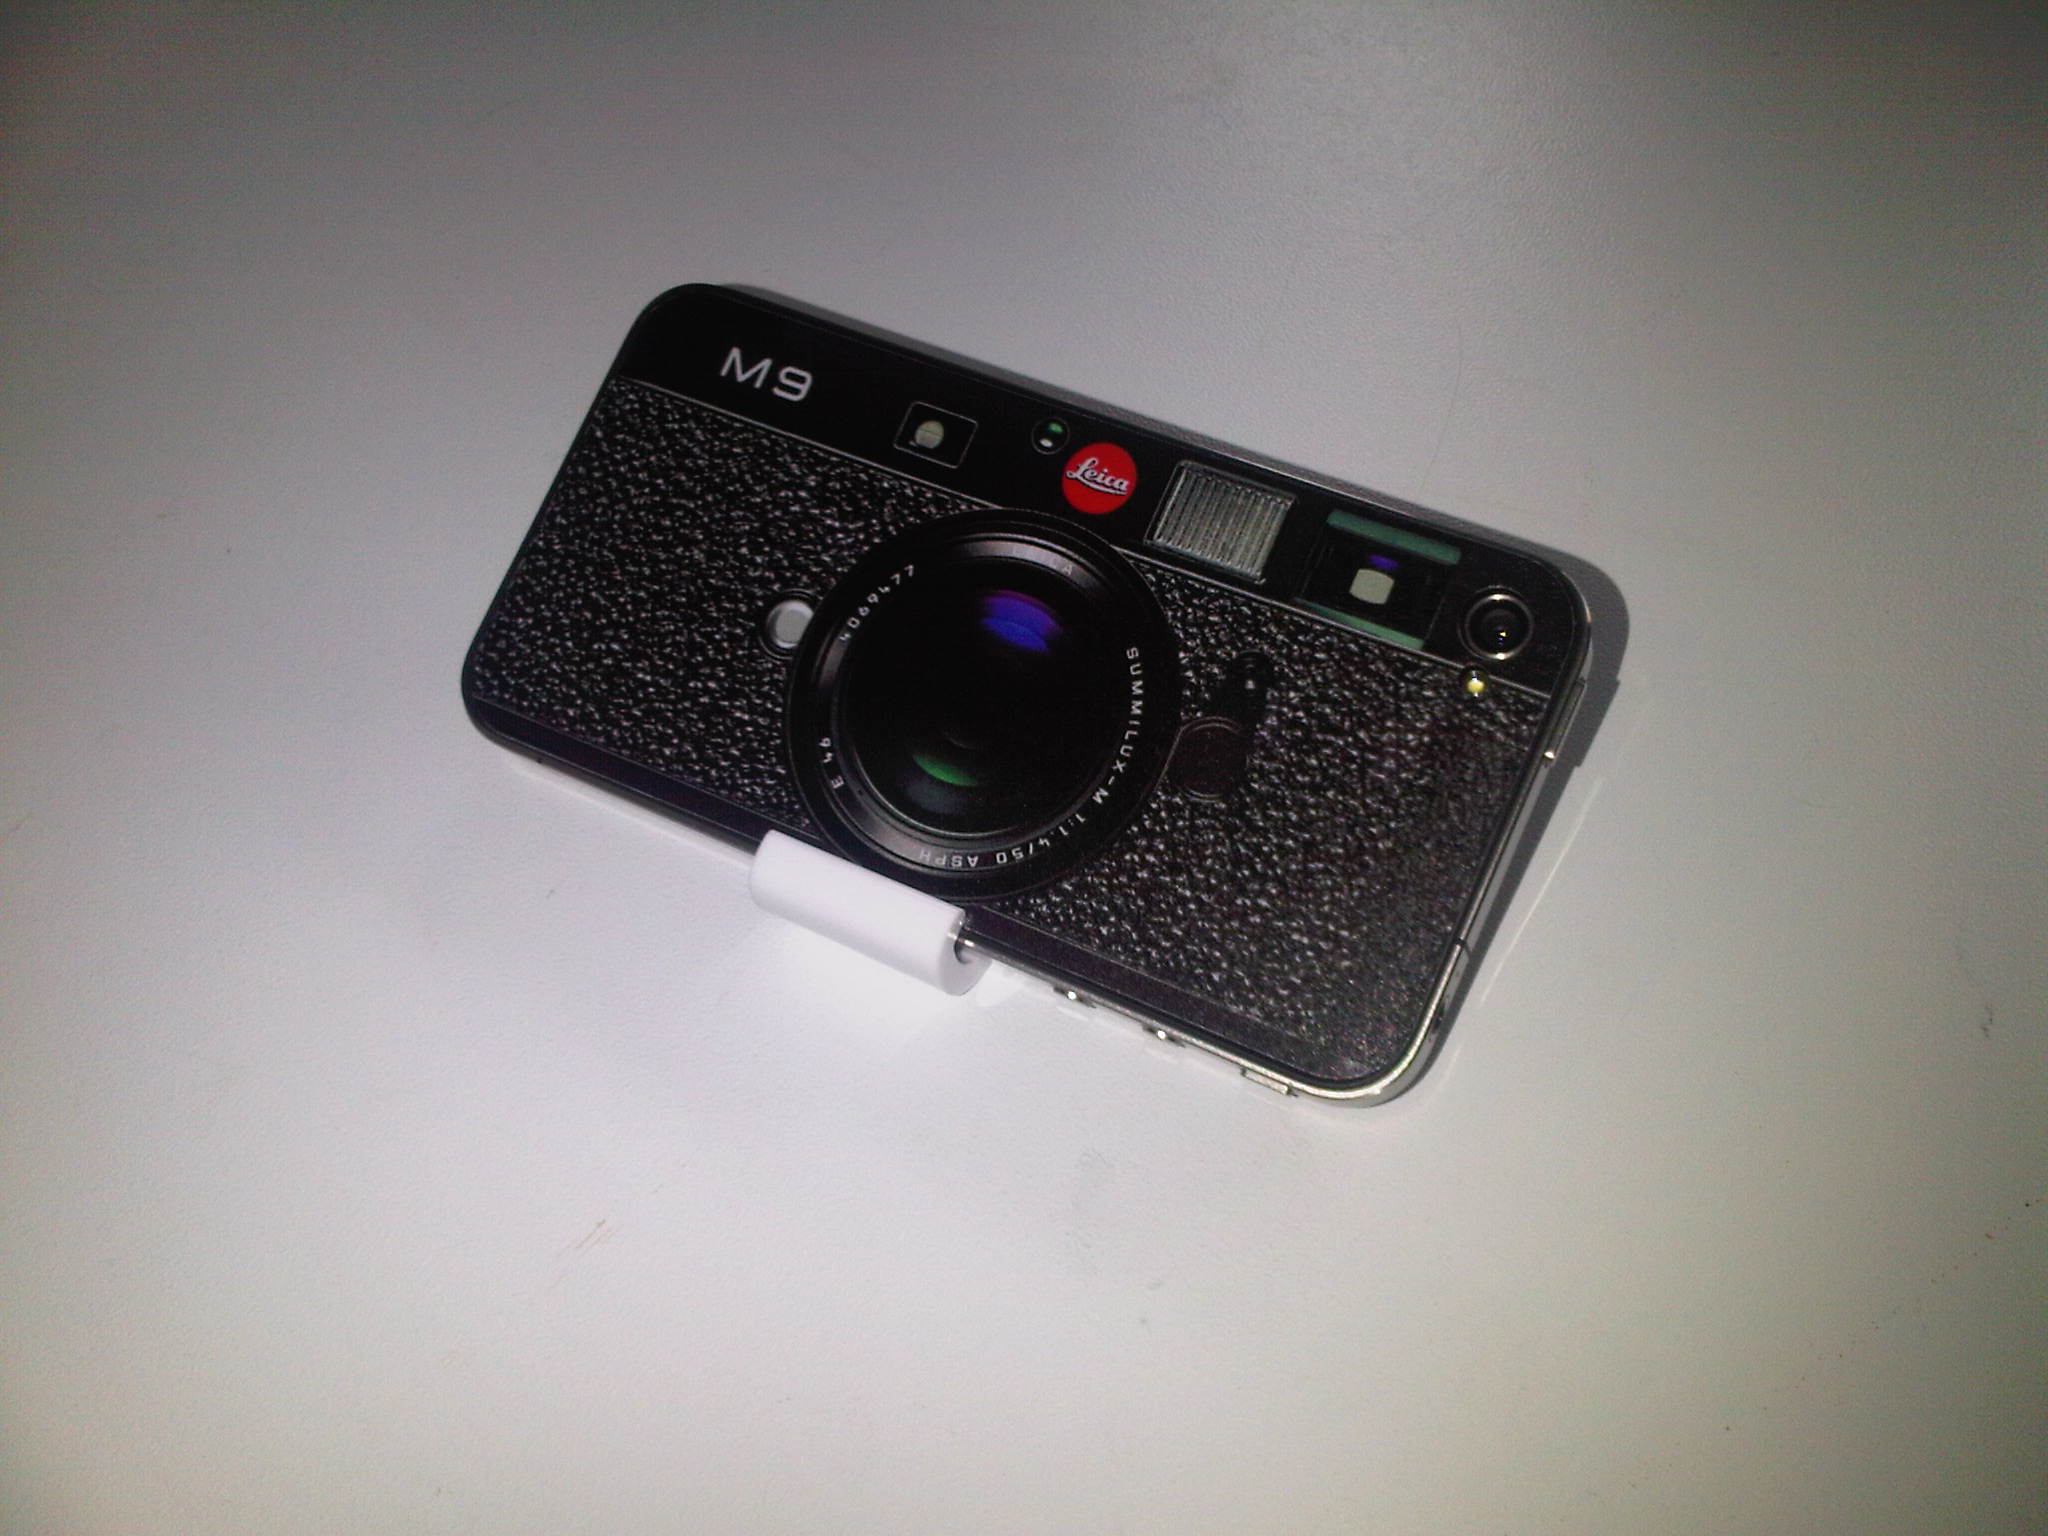 iPhone Leica M9